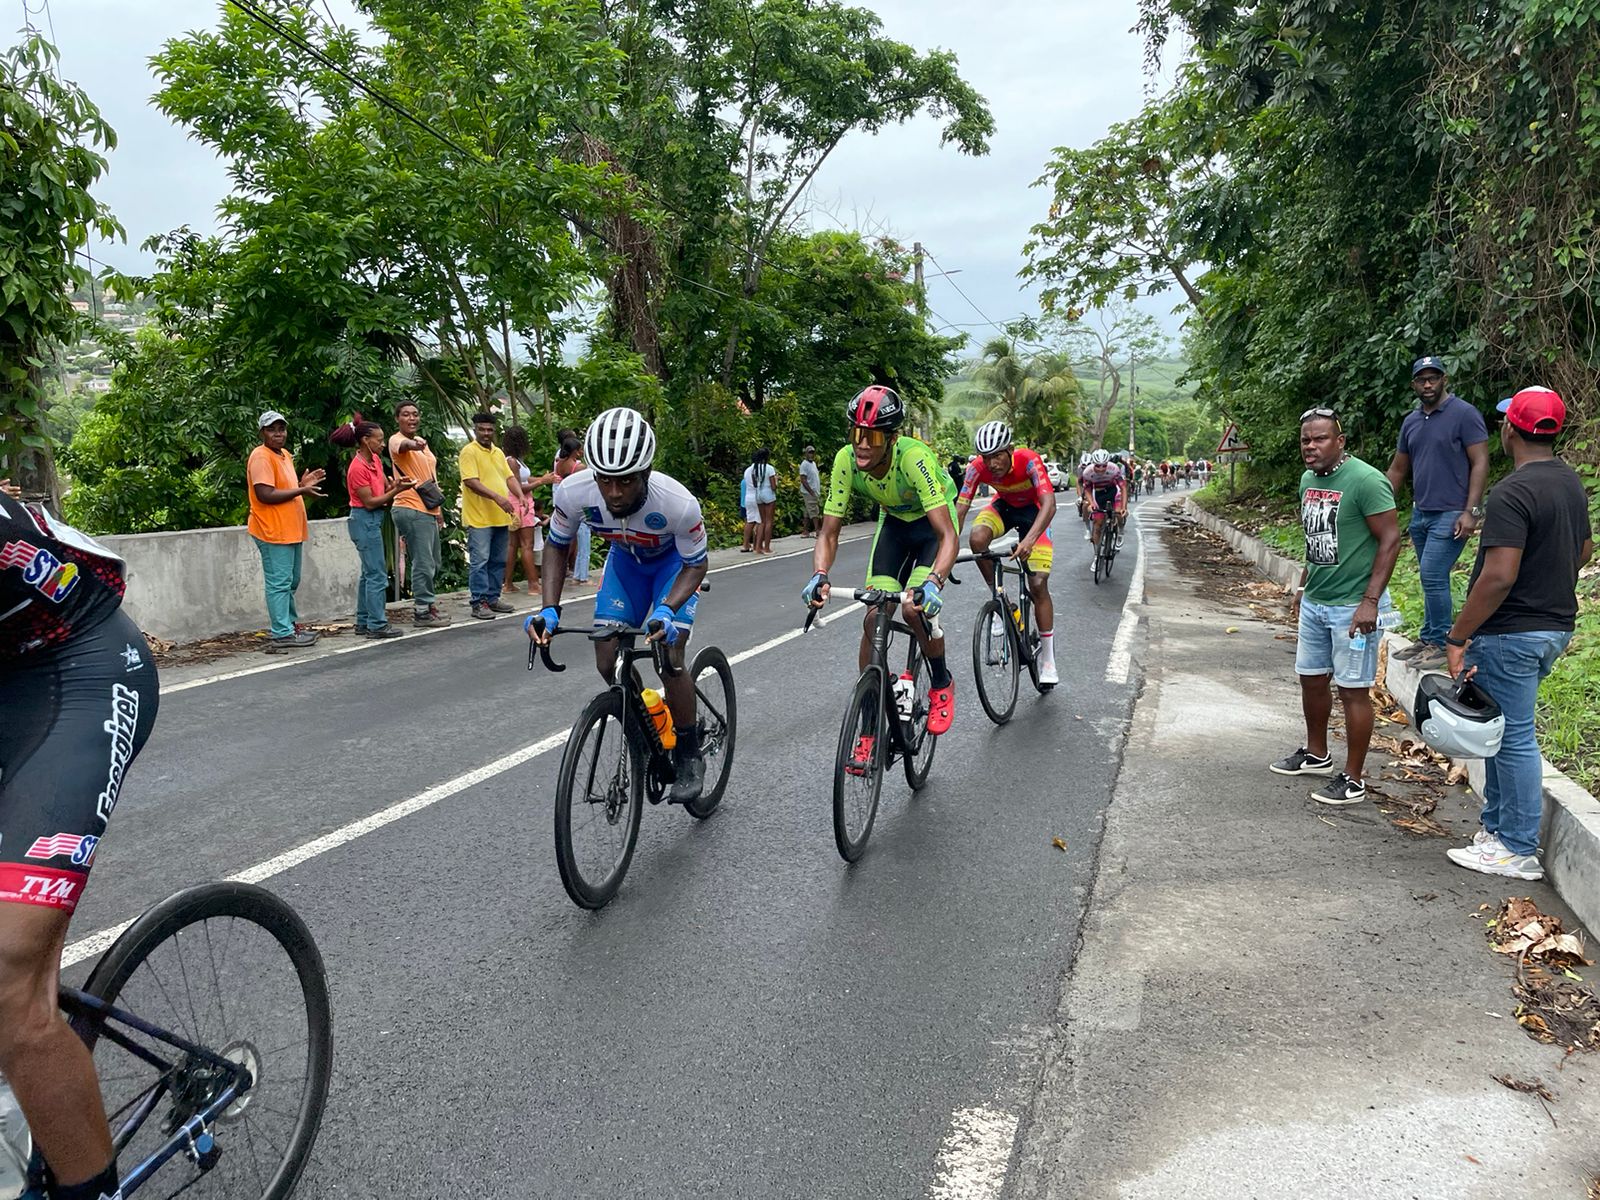     Une 3ème étape plus difficile pour la sélection Guadeloupe sur le Tour de Martinique

